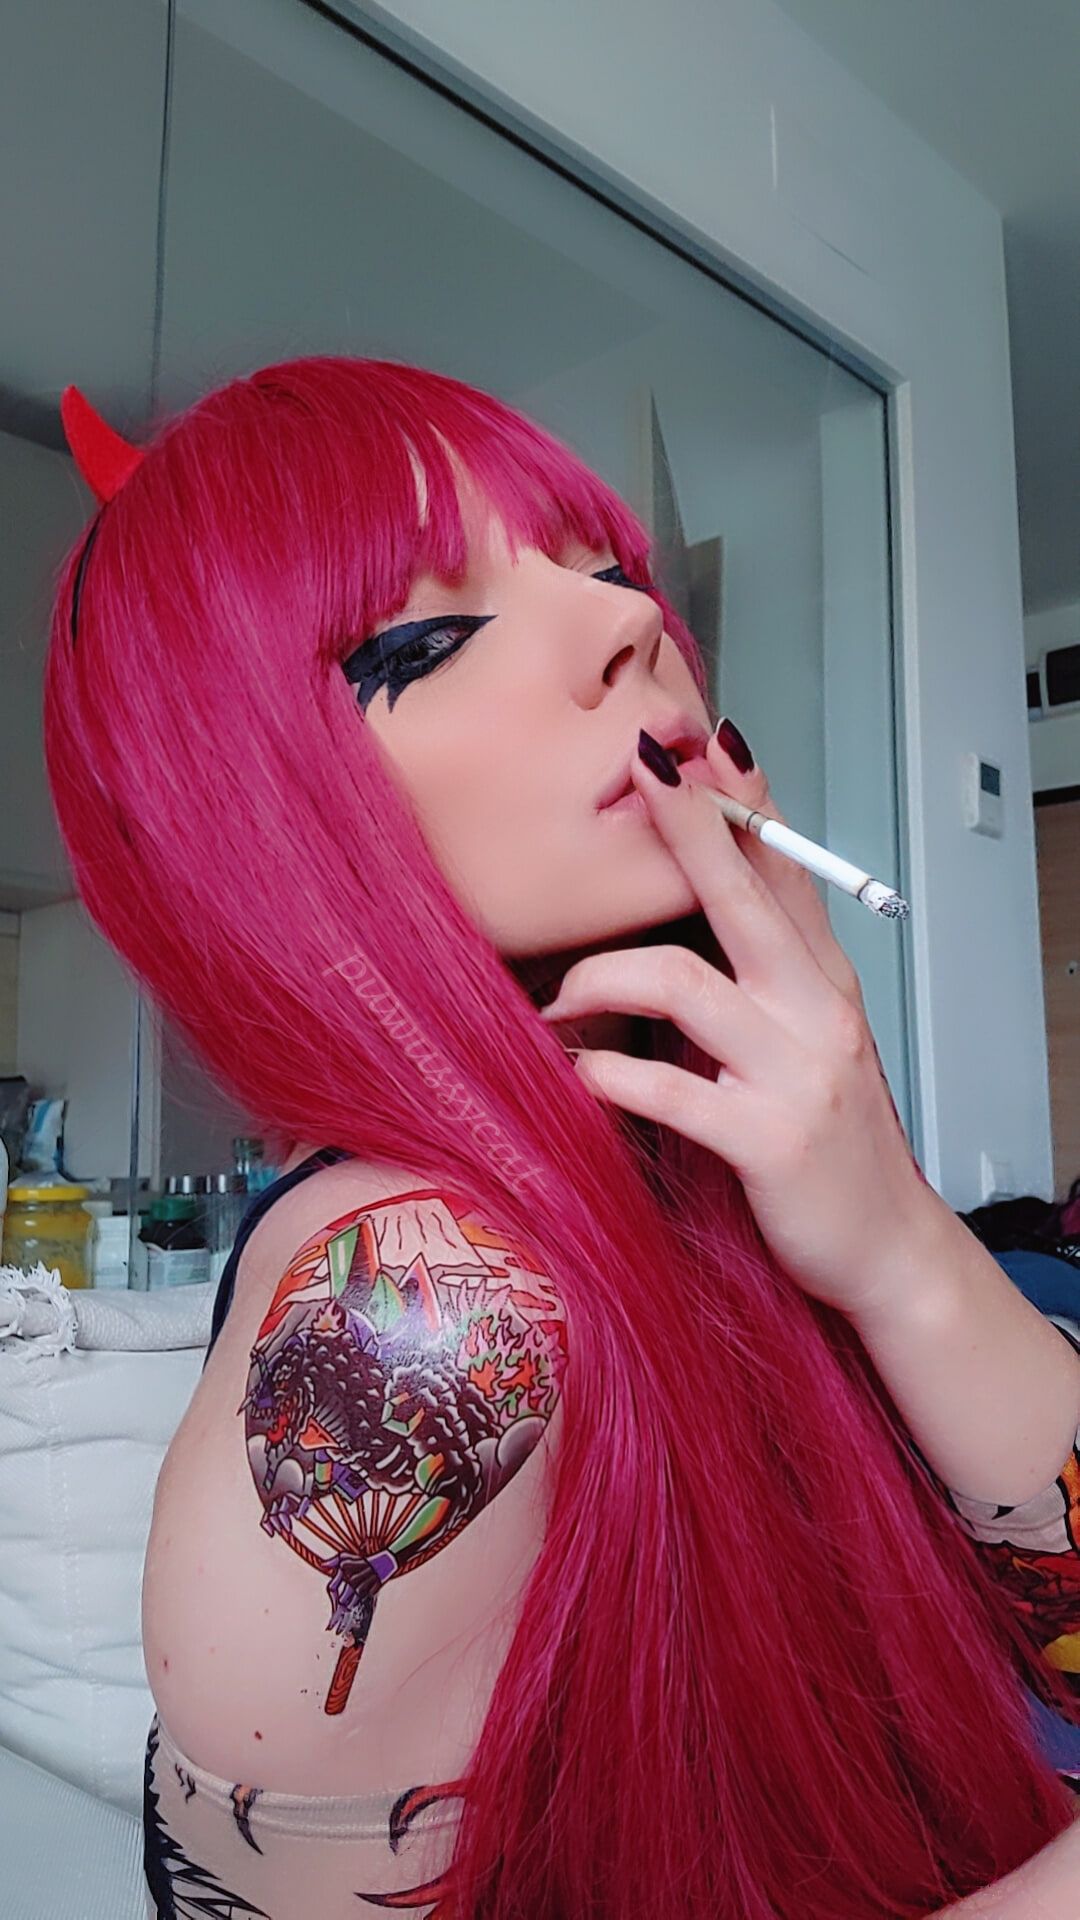 Goth Metal Girl Smoking #8